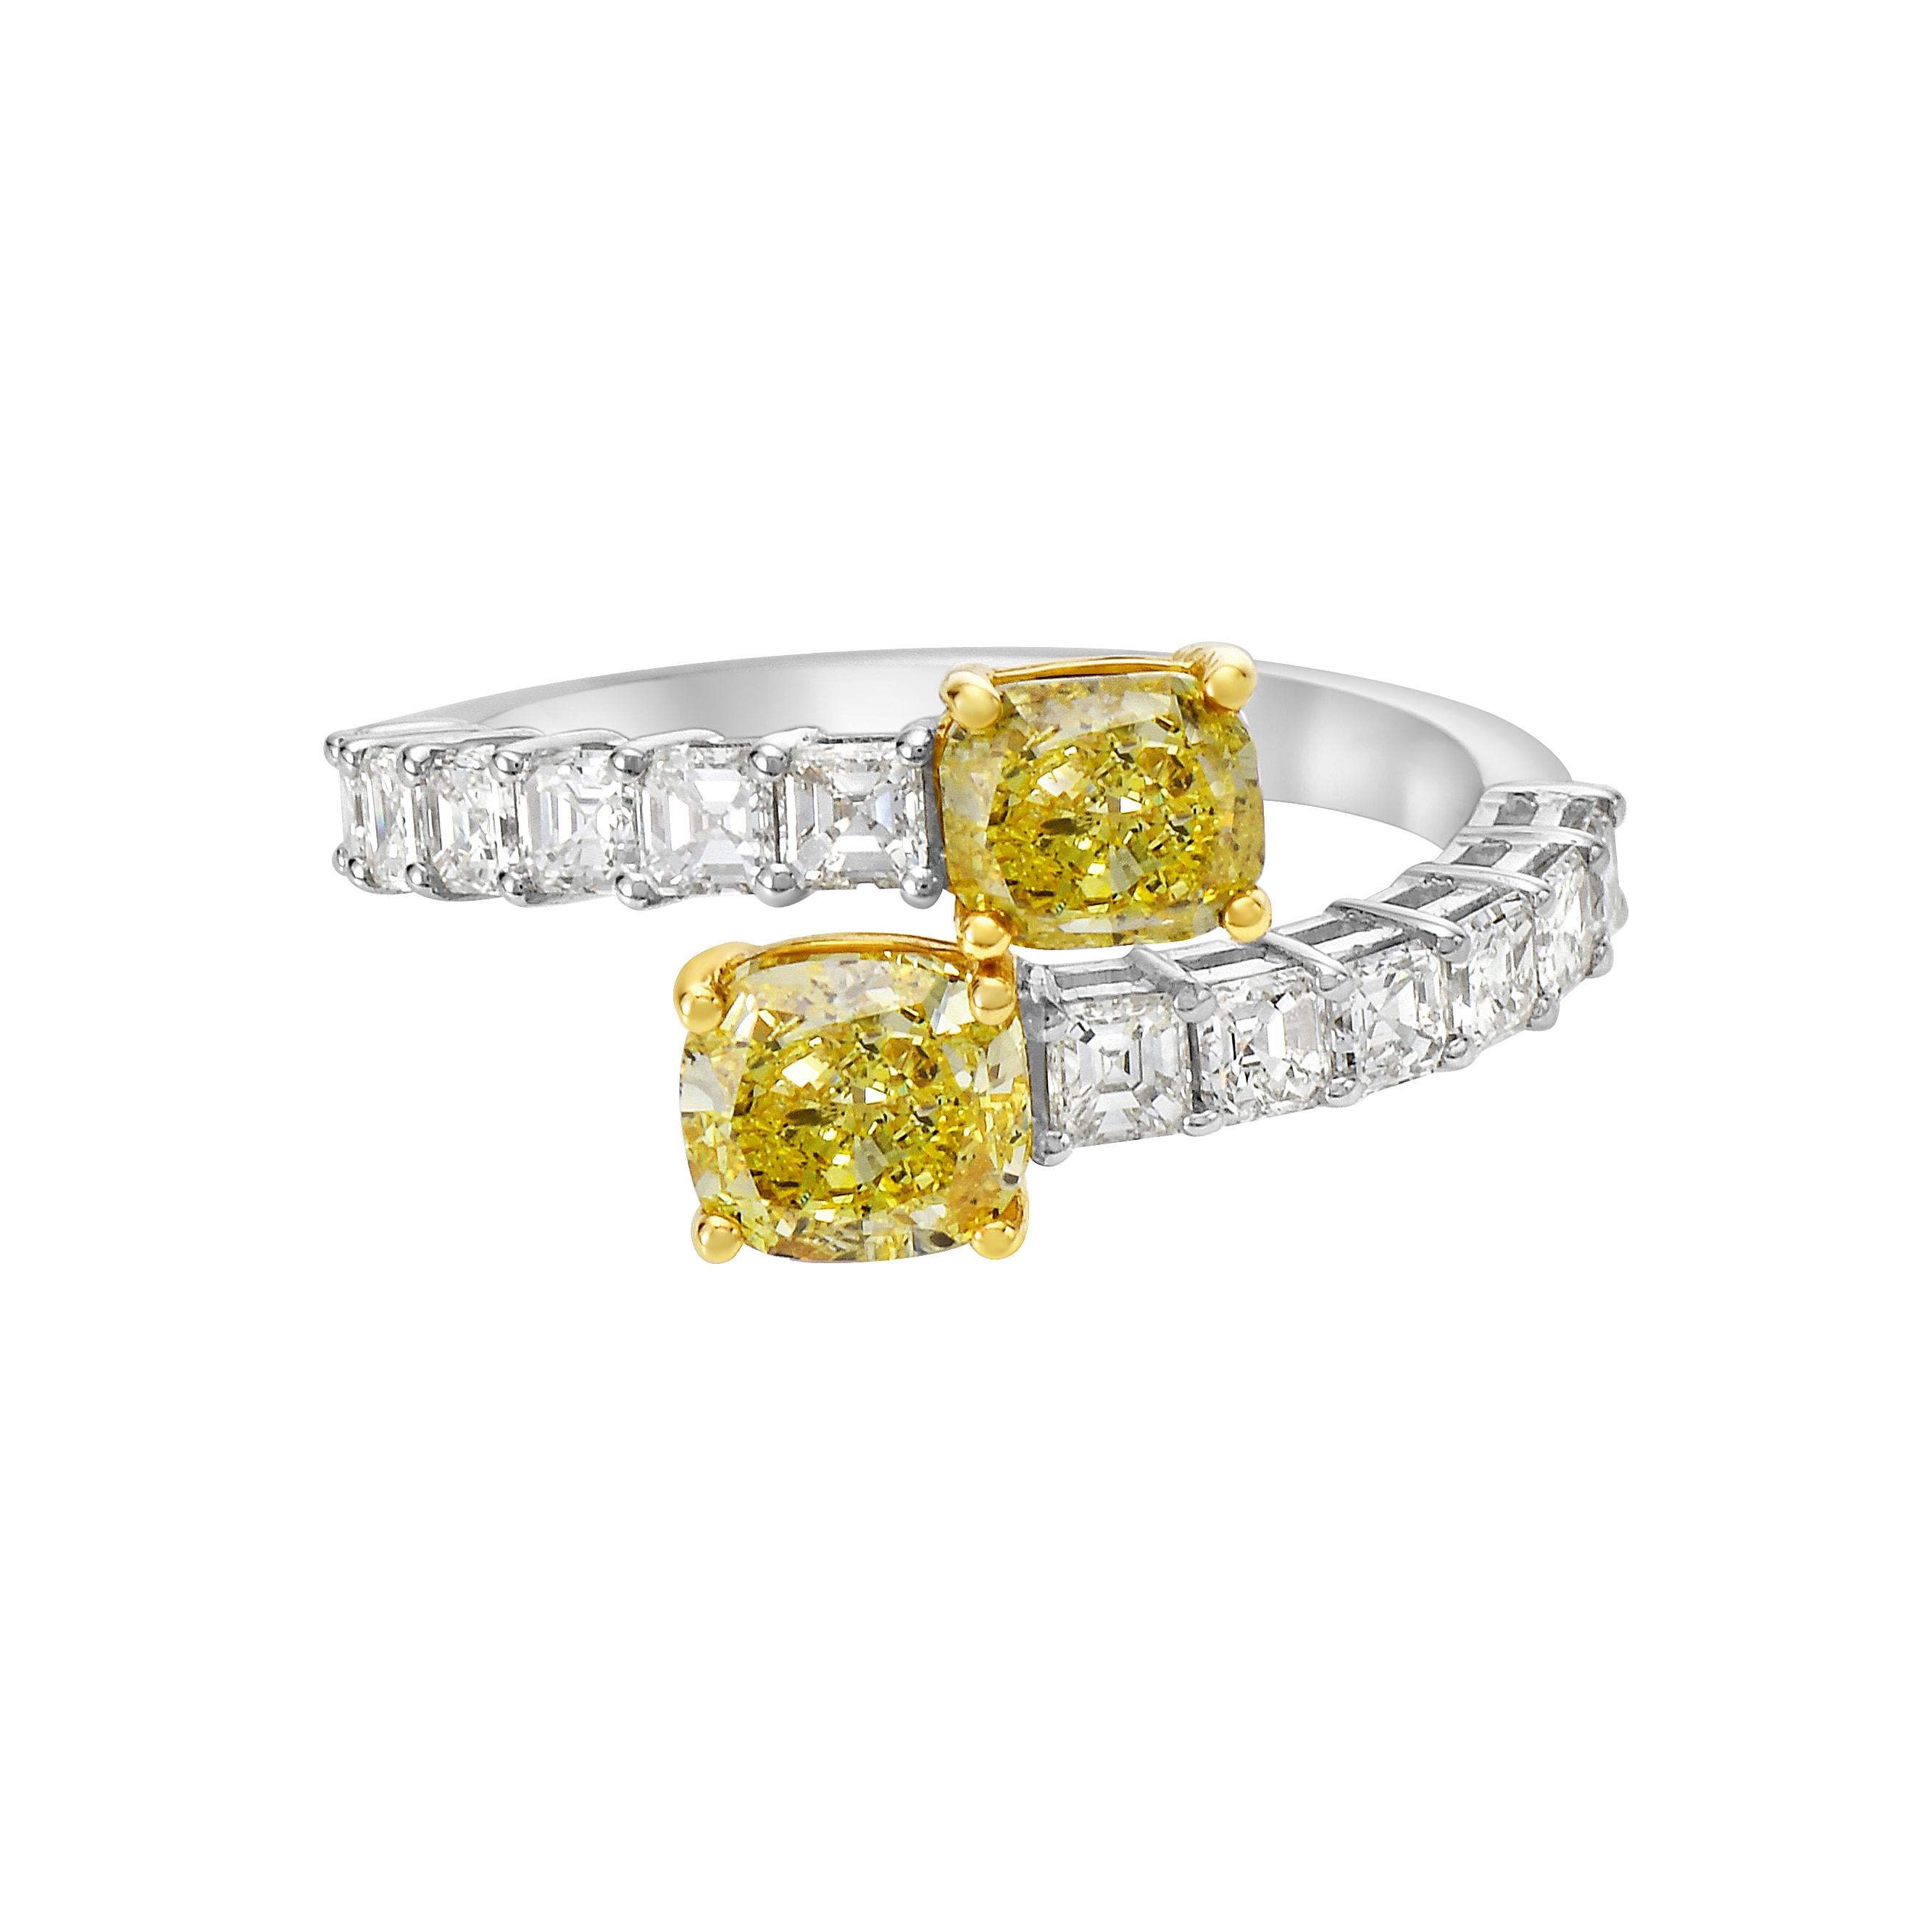 18K White and Yellow Gold
White Diamonds: 1.04 carats 
Yellow Diamonds: 1.06 carats